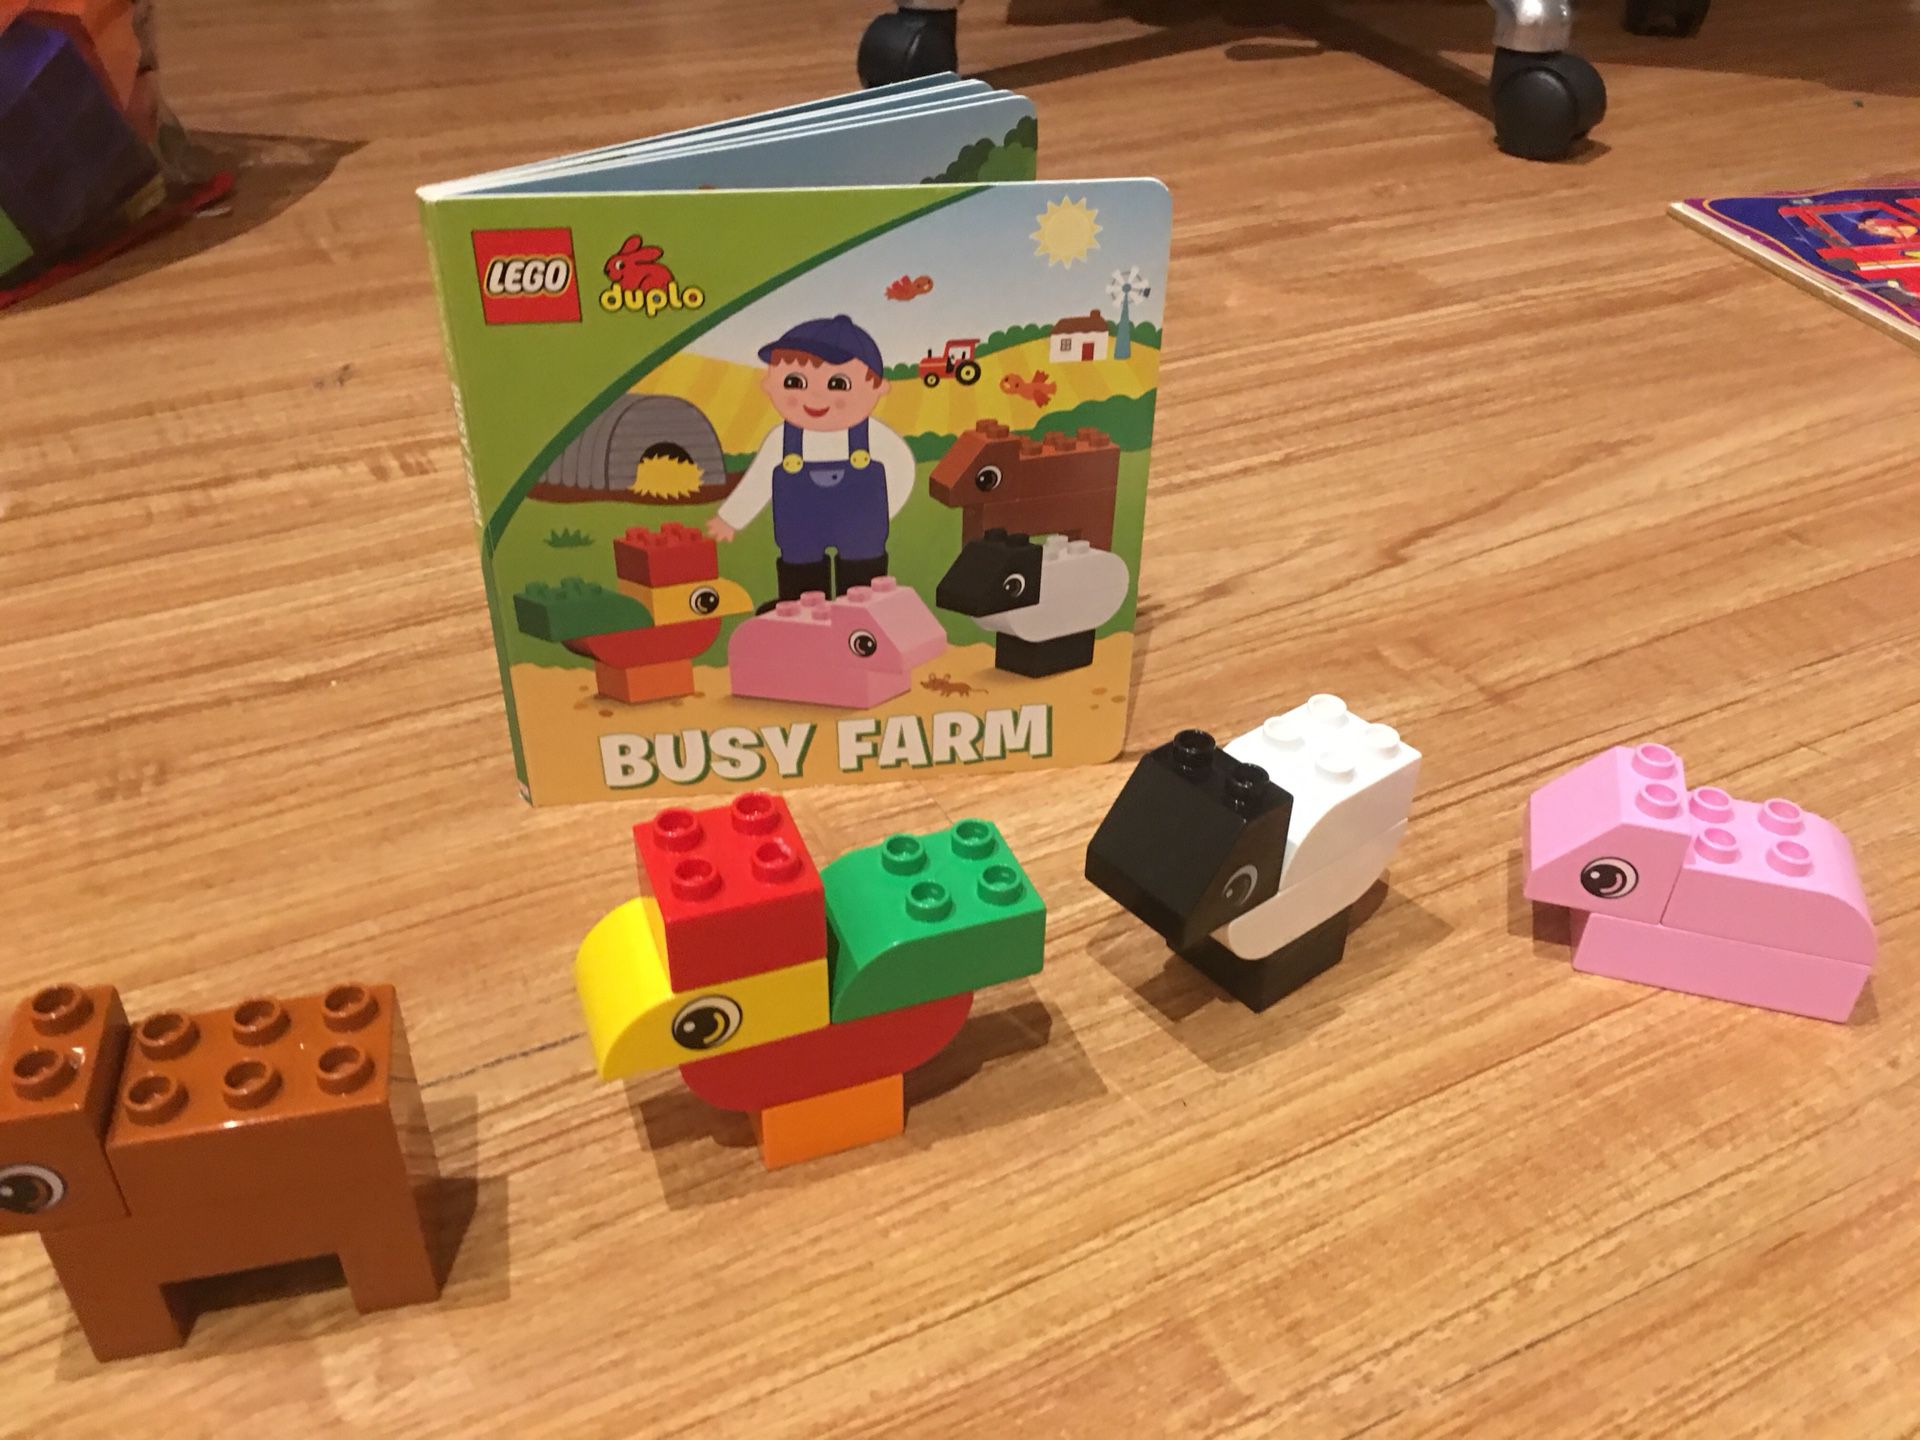 LEGO duplo Book + LEGO Set - busy farm animals